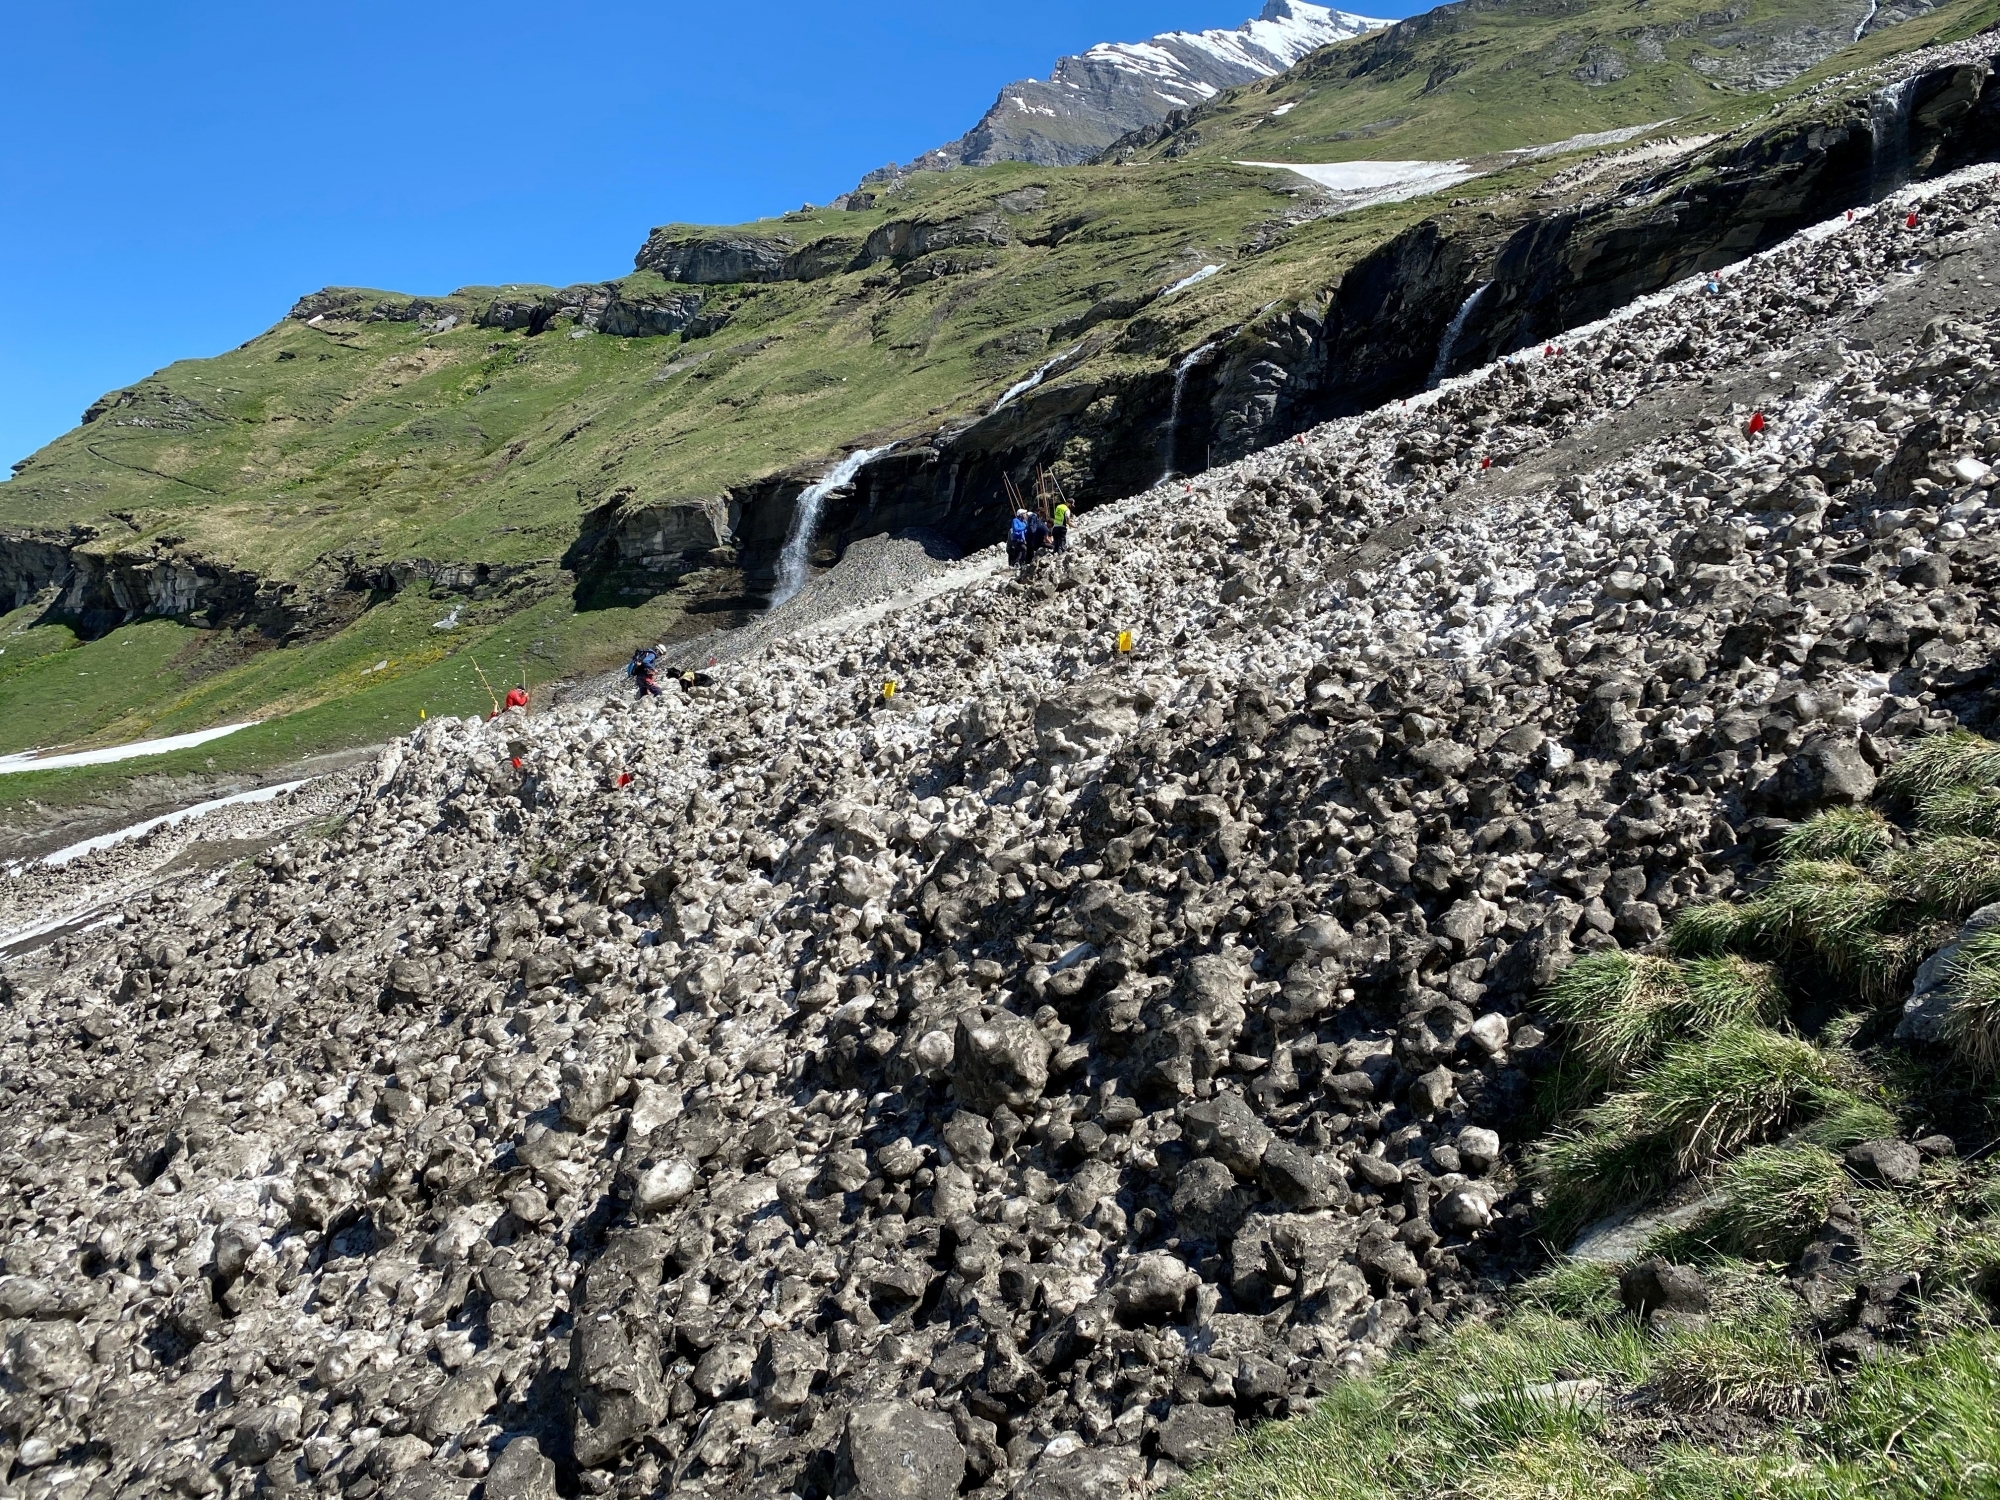 Le drame survenu à Mauvoisin rappelle que des avalanches peuvent dévaler des pentes en été et se retrouver au milieu de la végétation.